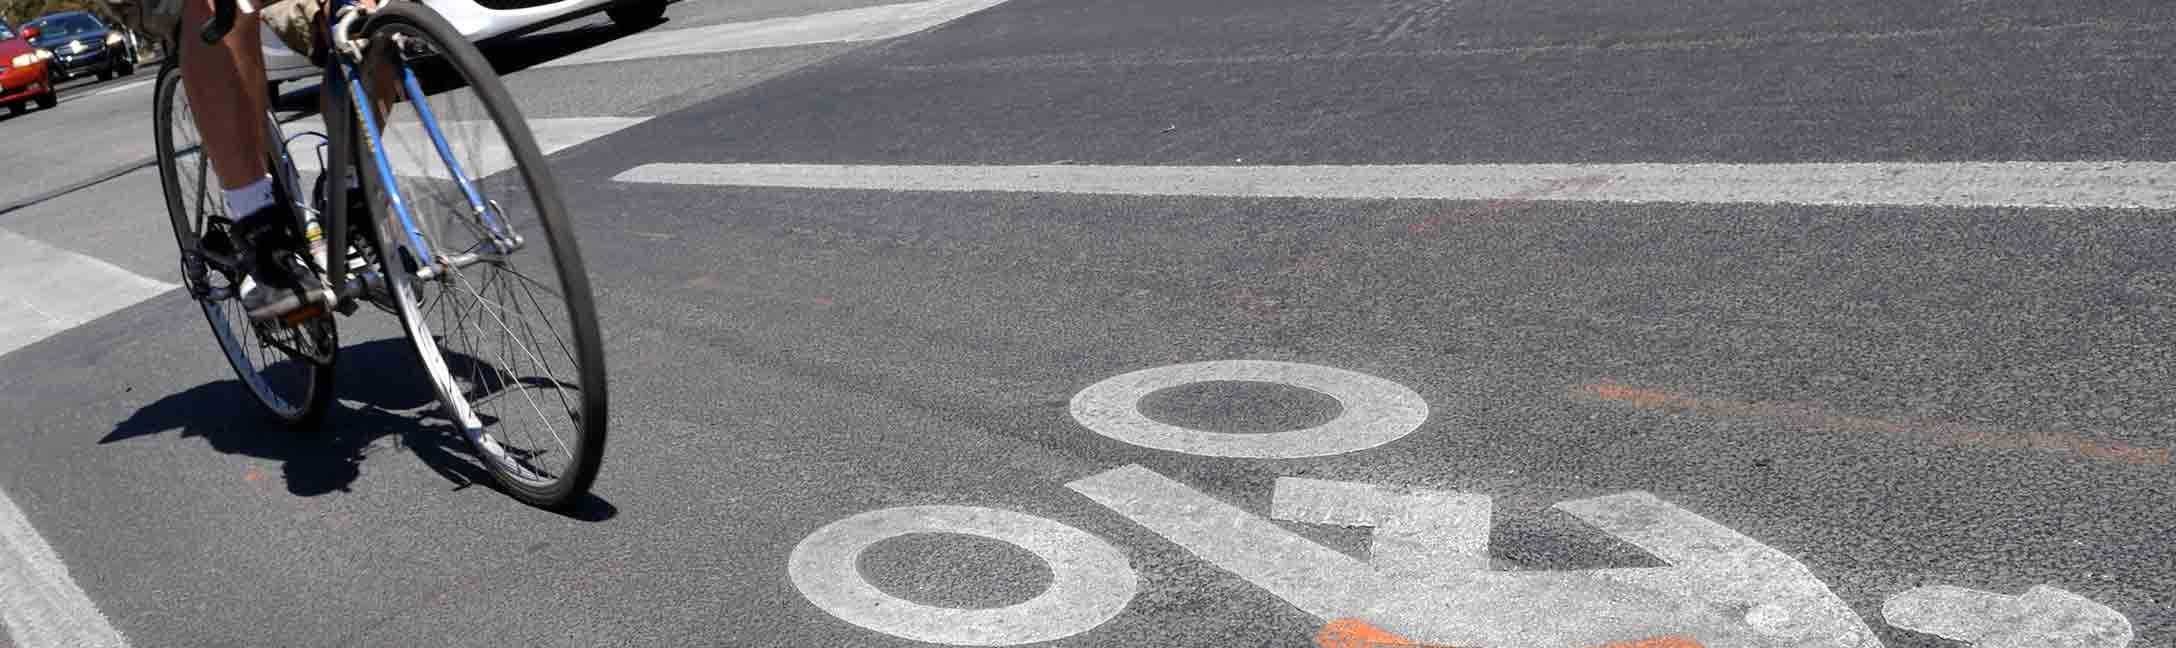 bicycle riding in marked bike lane